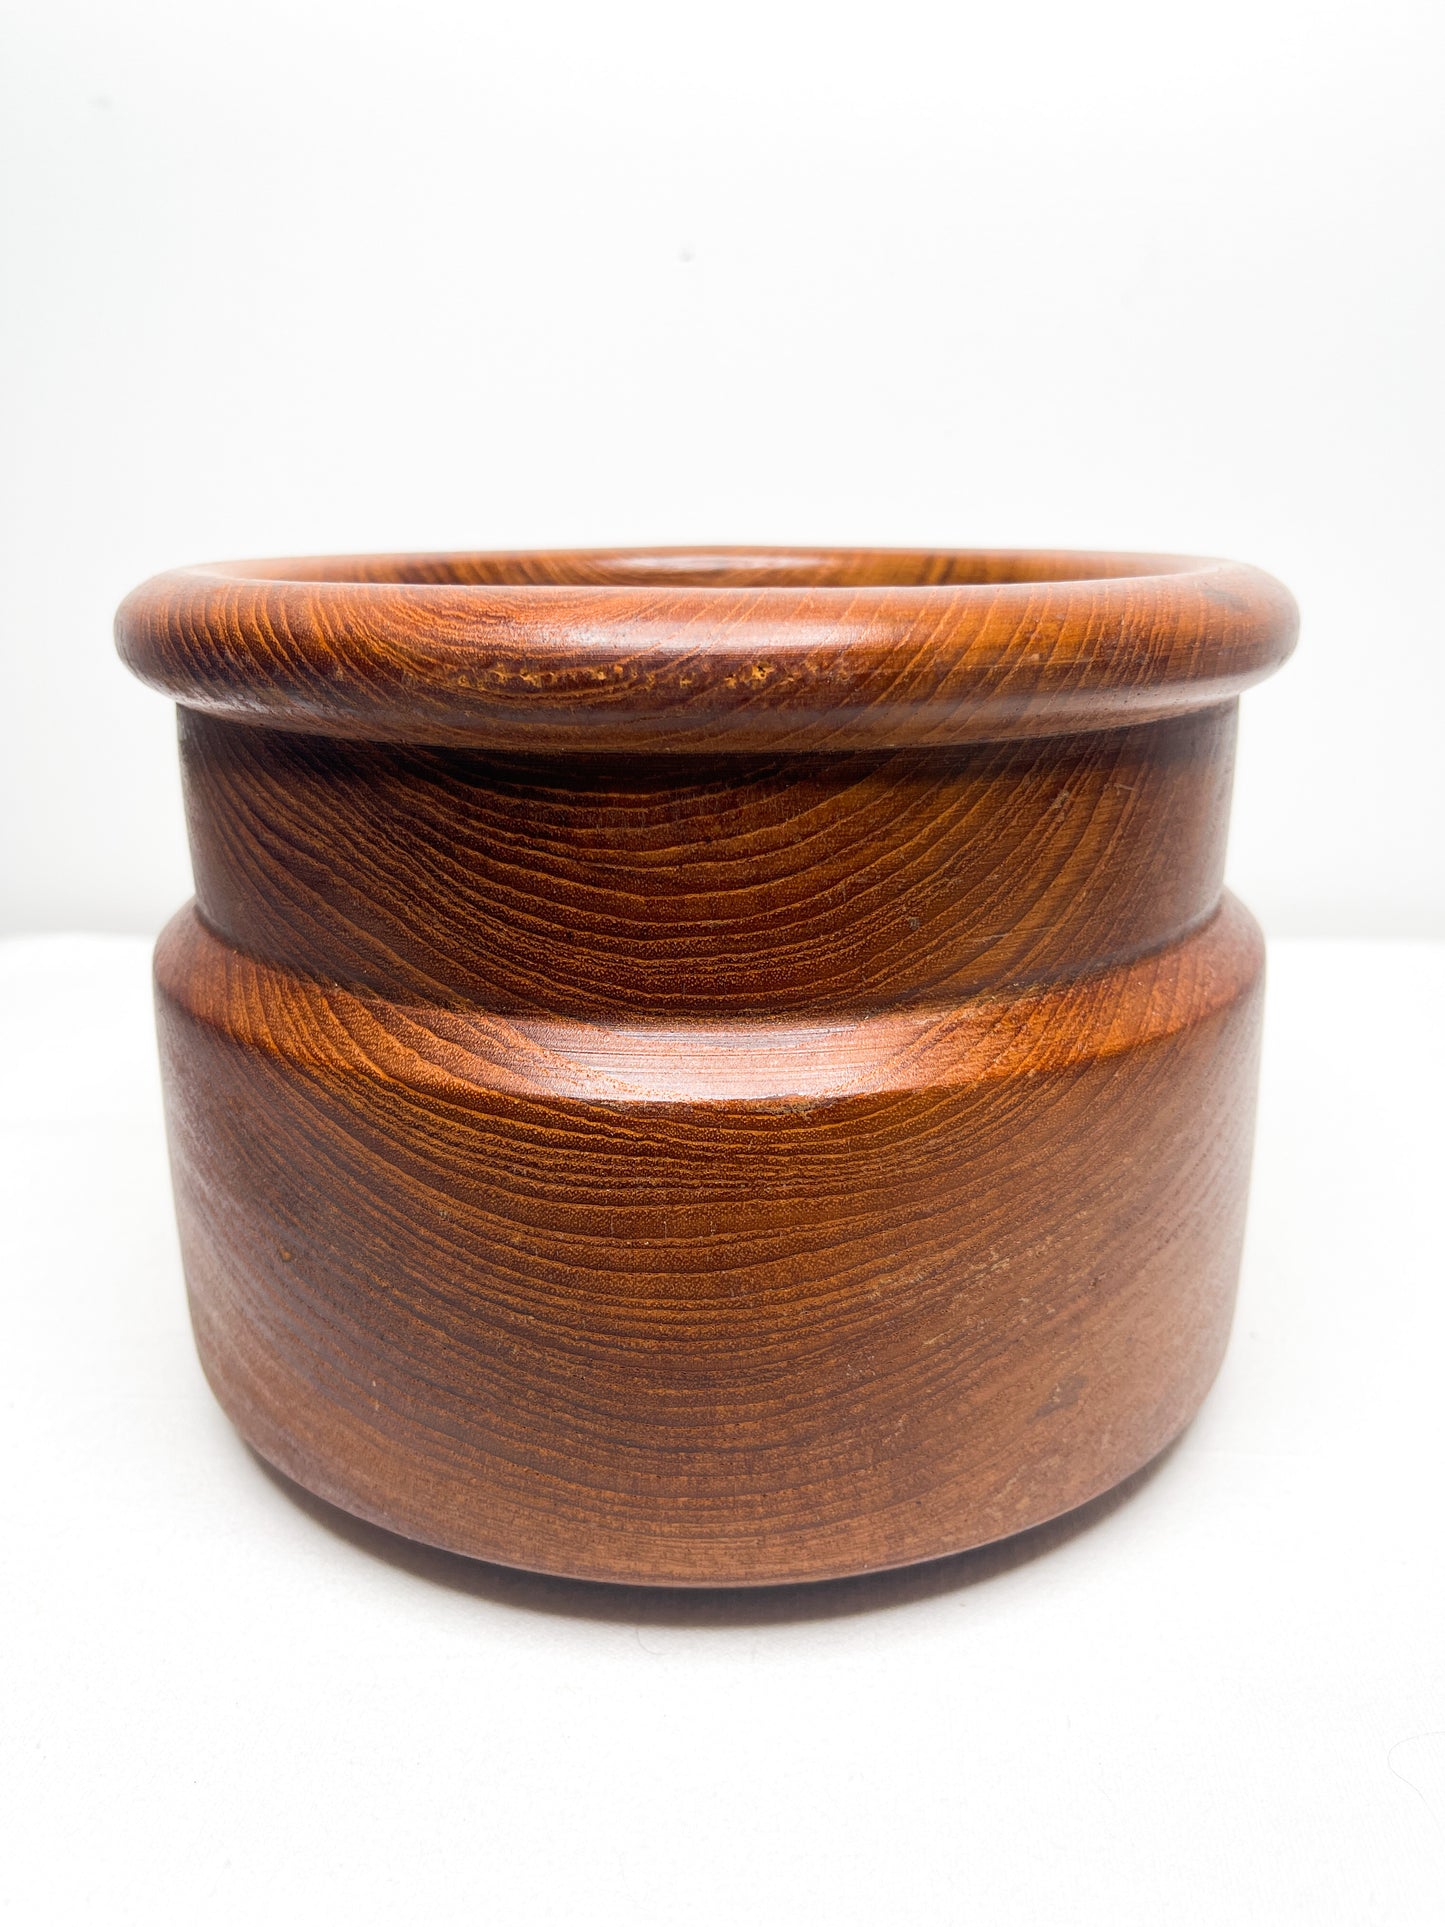 Vintage Teak Wood Bowl